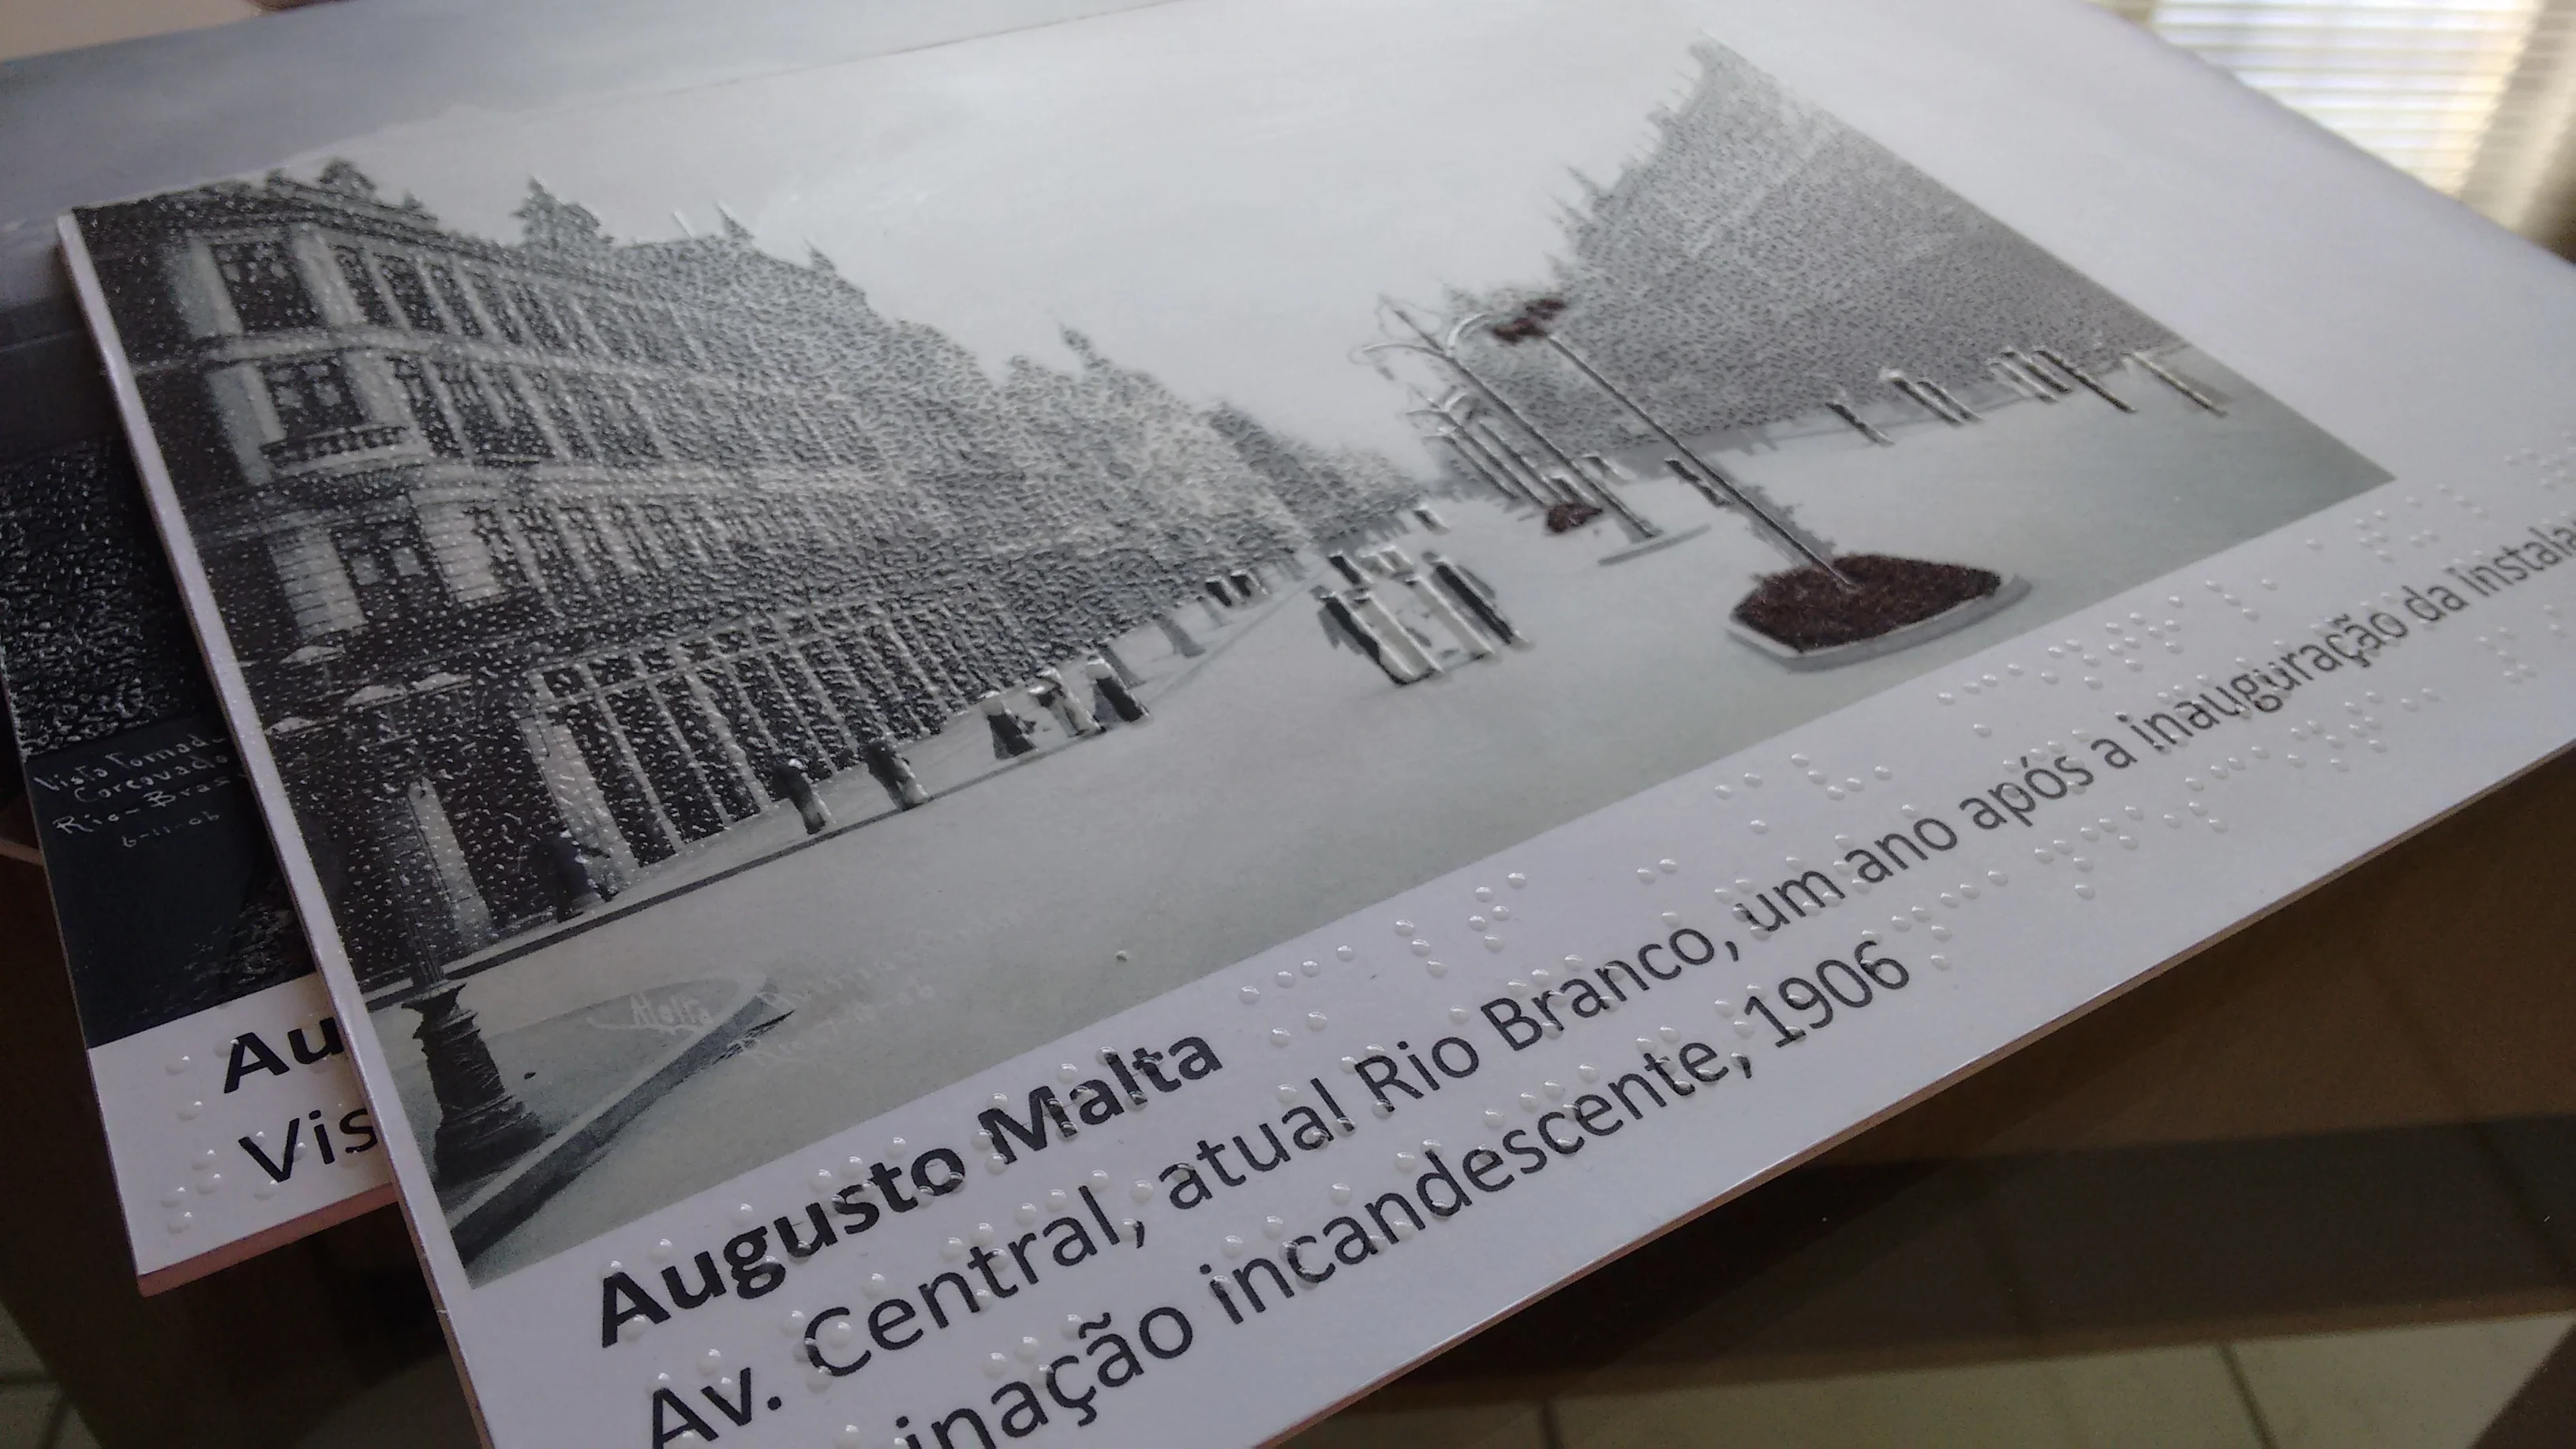 Placa ilustrada com imagem da histórica Avenida Central, atual Rio Branco com descrições em Braille impresso com serigrafia